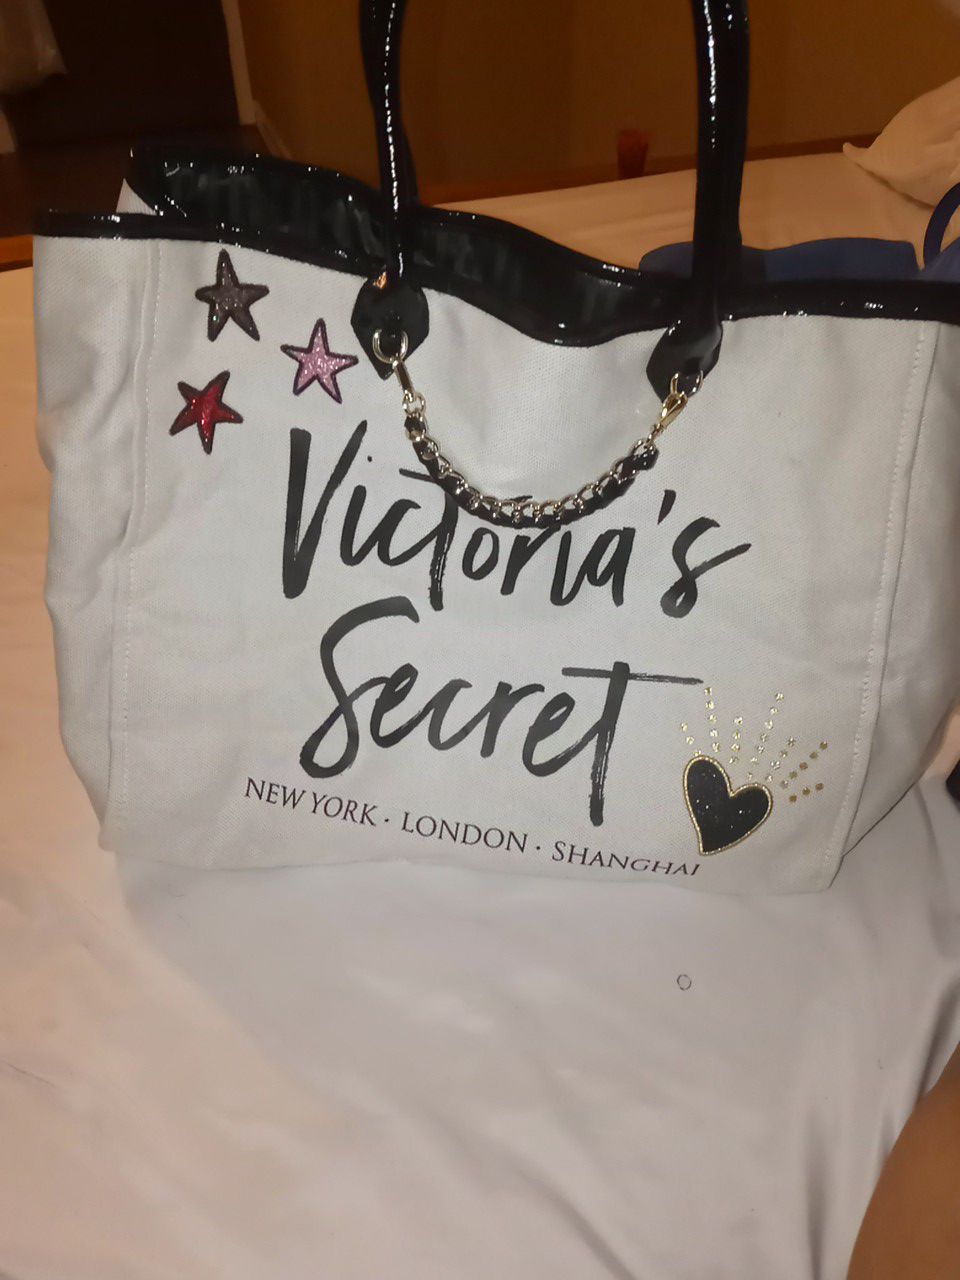 Victoria secret tote bag